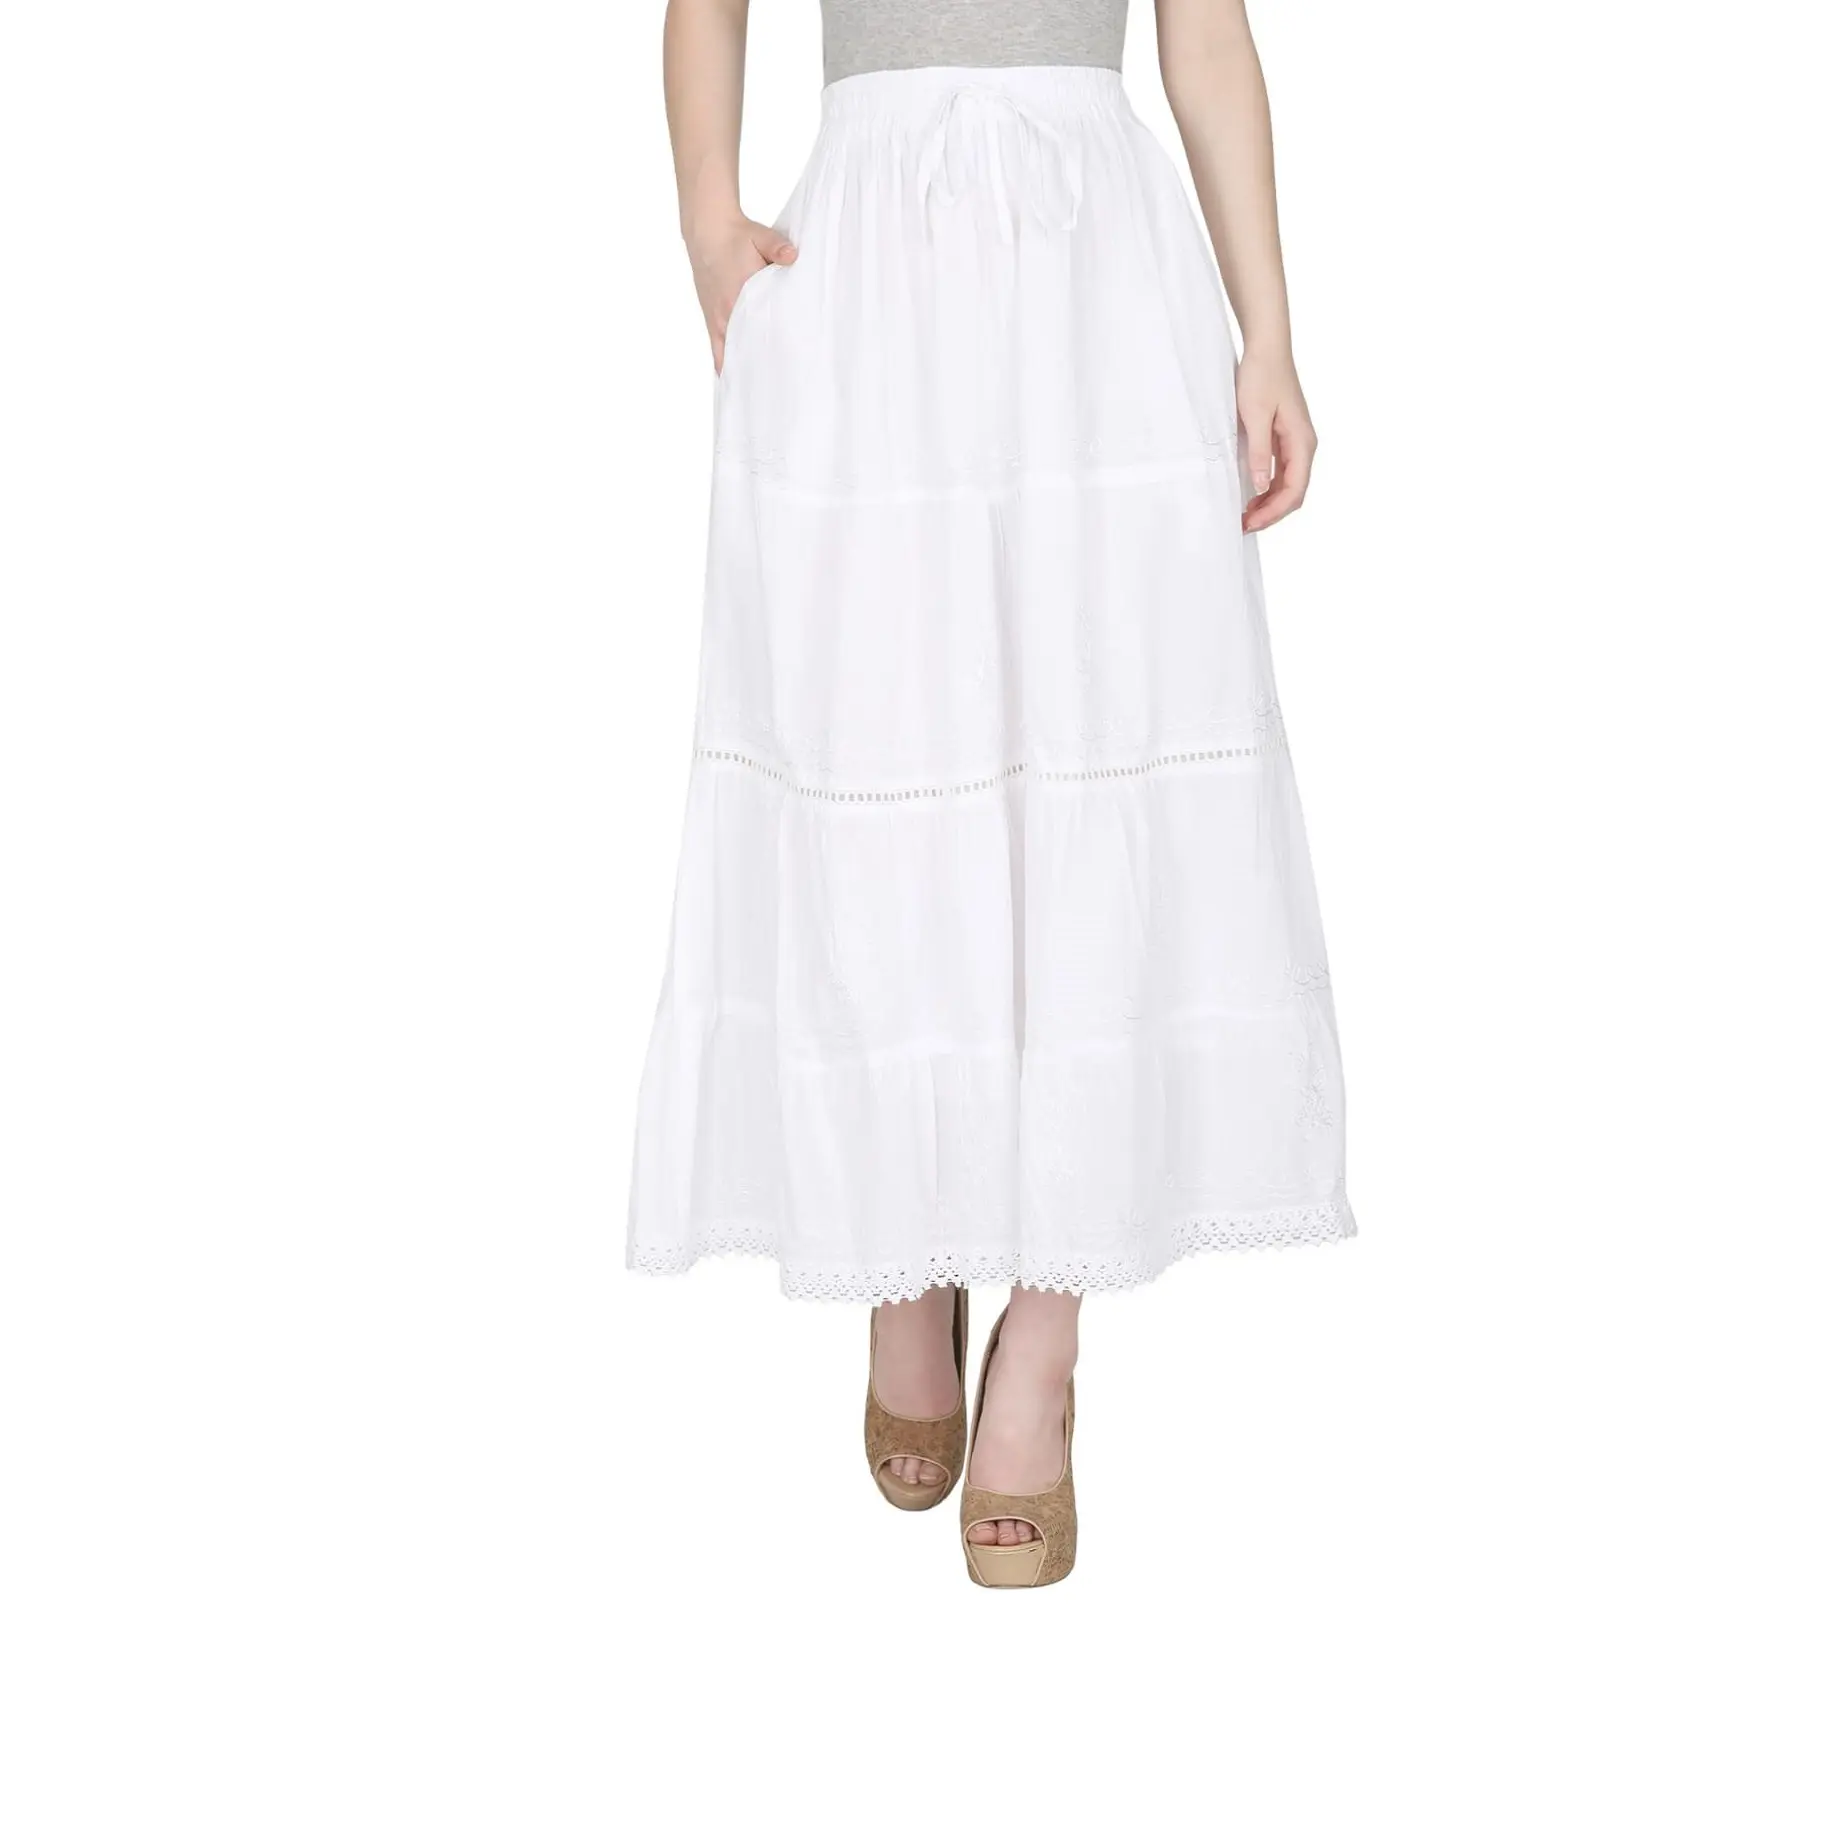 À la mode 100% Coton Blanc Jupe Gitane Usure Attractive Longue Jupe de Femmes/Casual Jupe À Prix de Gros